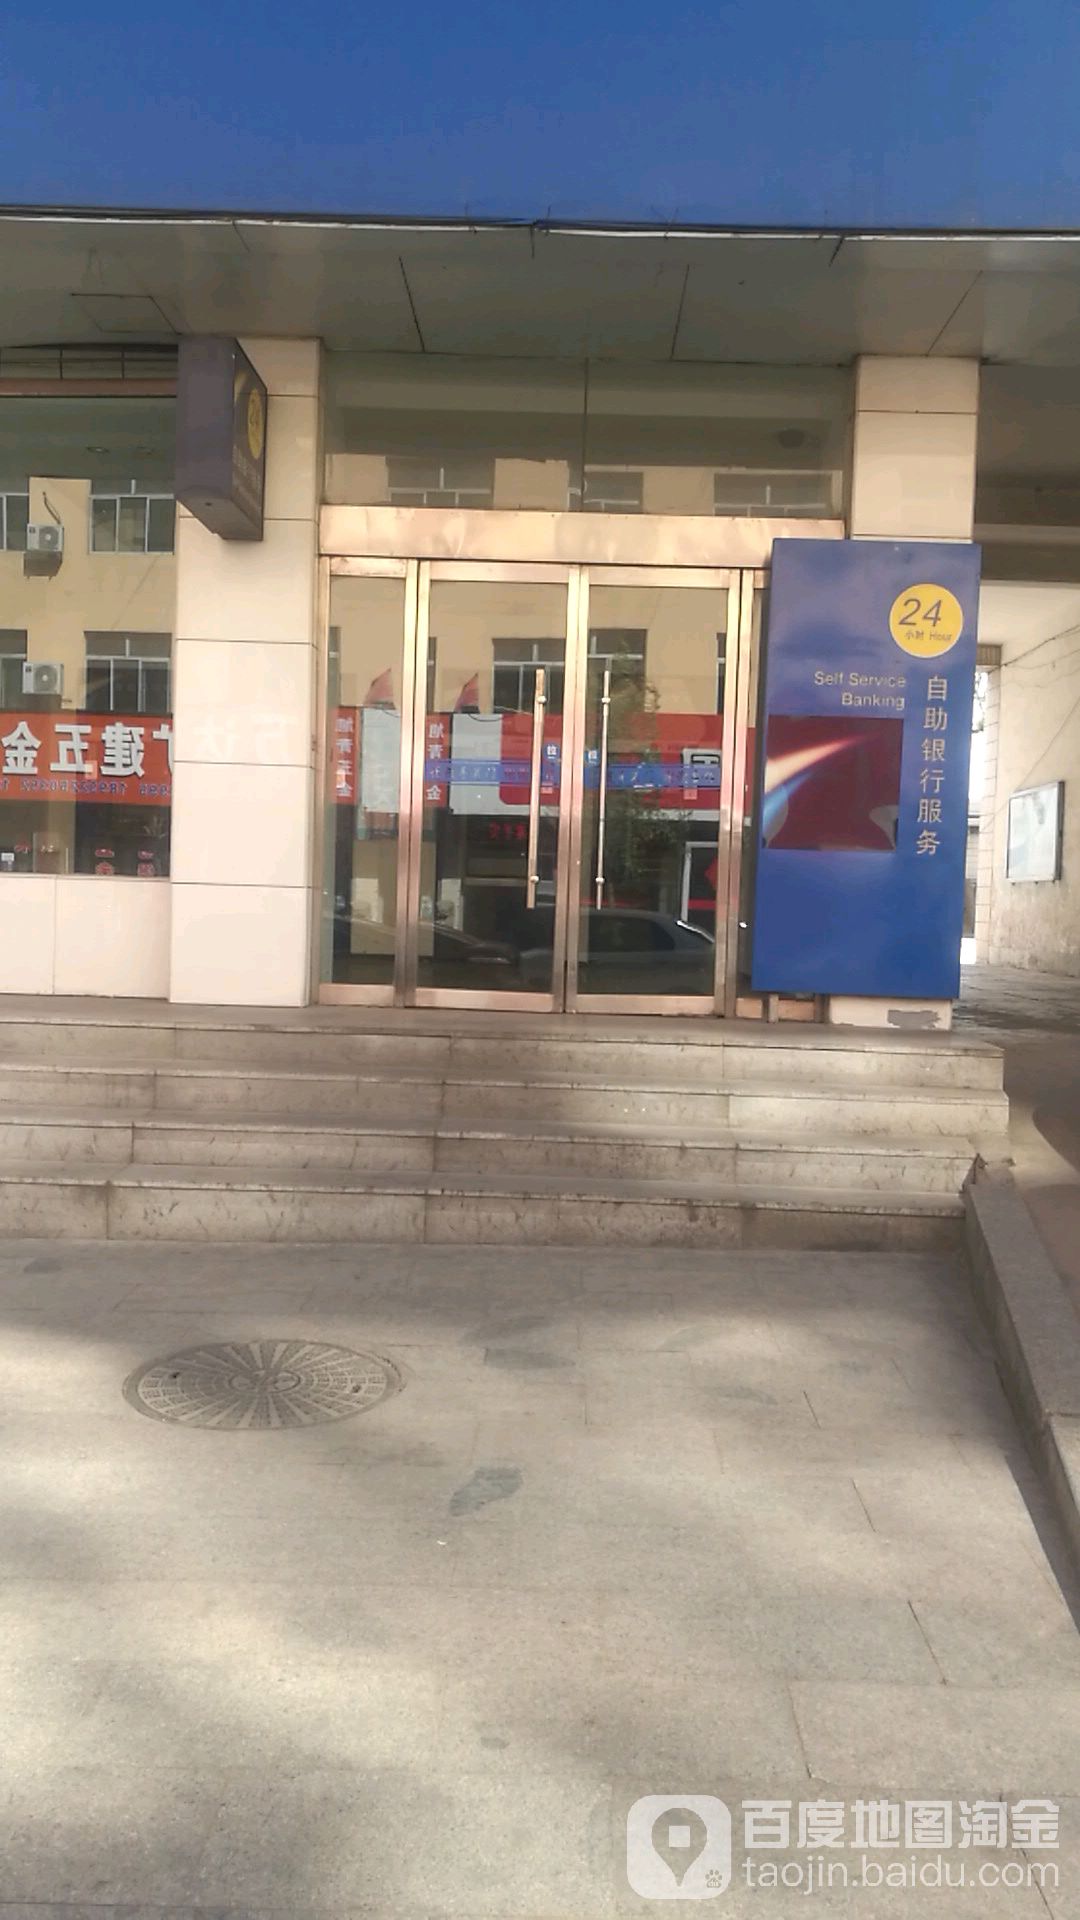 中國建設銀行24小時自助銀行(大柳塔支行)